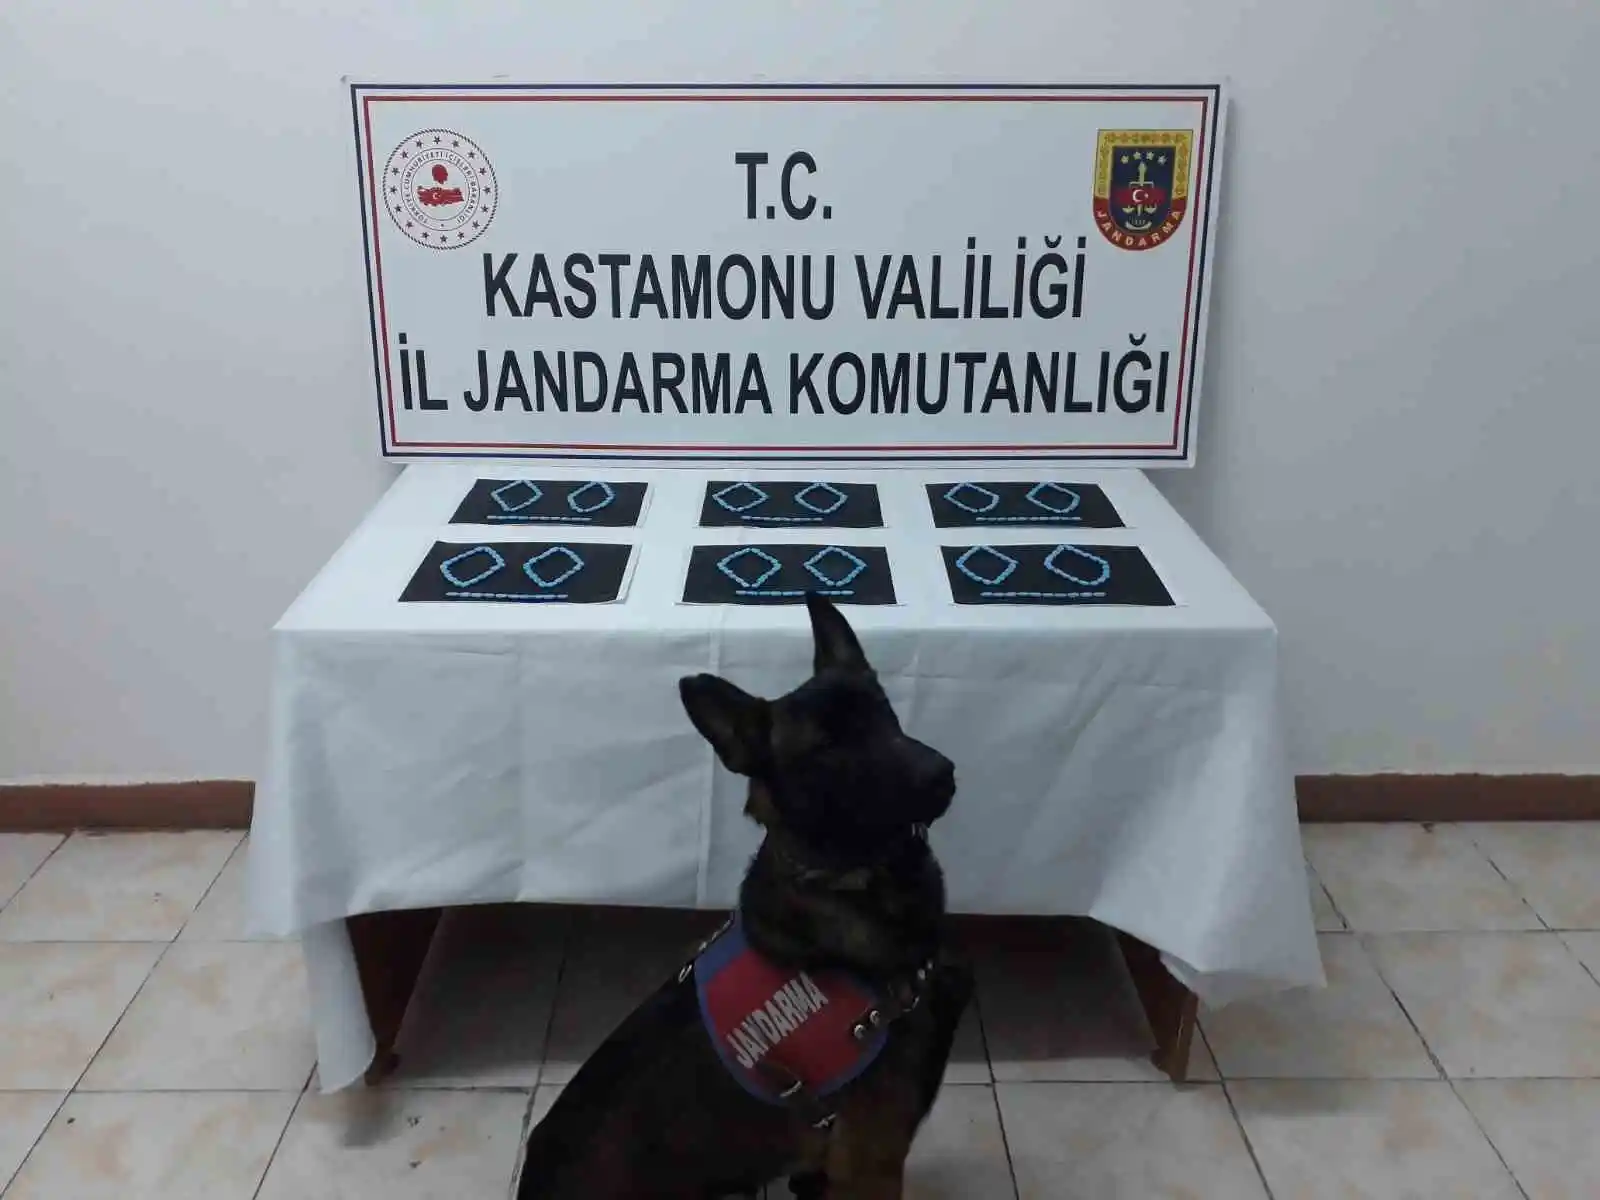 Kastamonu'da uyuşturucu operasyonu: 6 tutuklama
